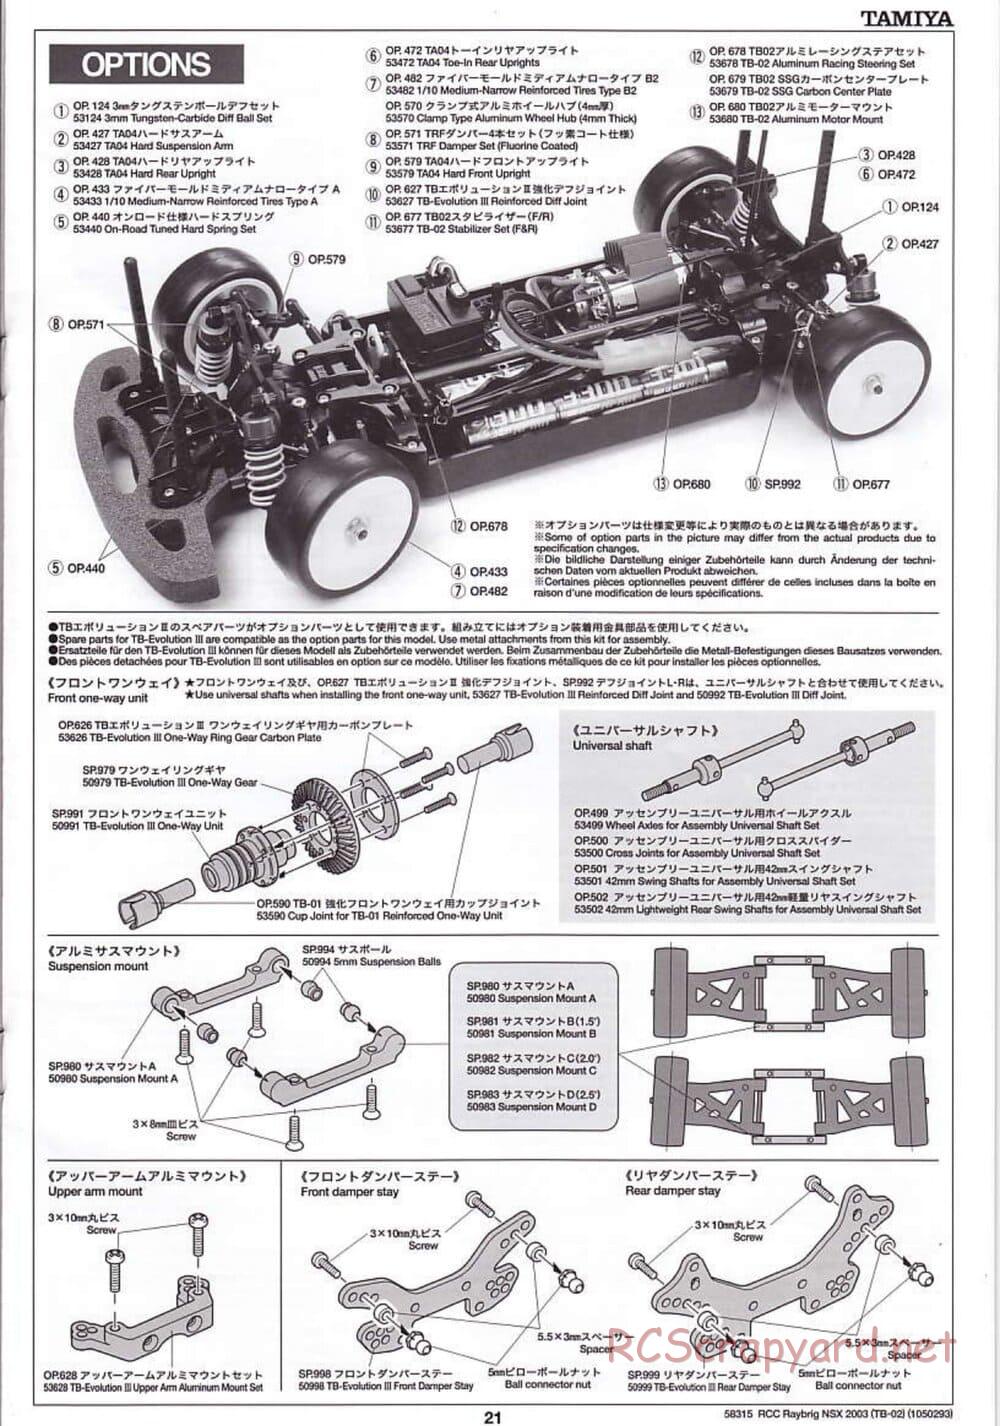 Tamiya - Raybrig NSX 2003 - TB-02 Chassis - Manual - Page 21